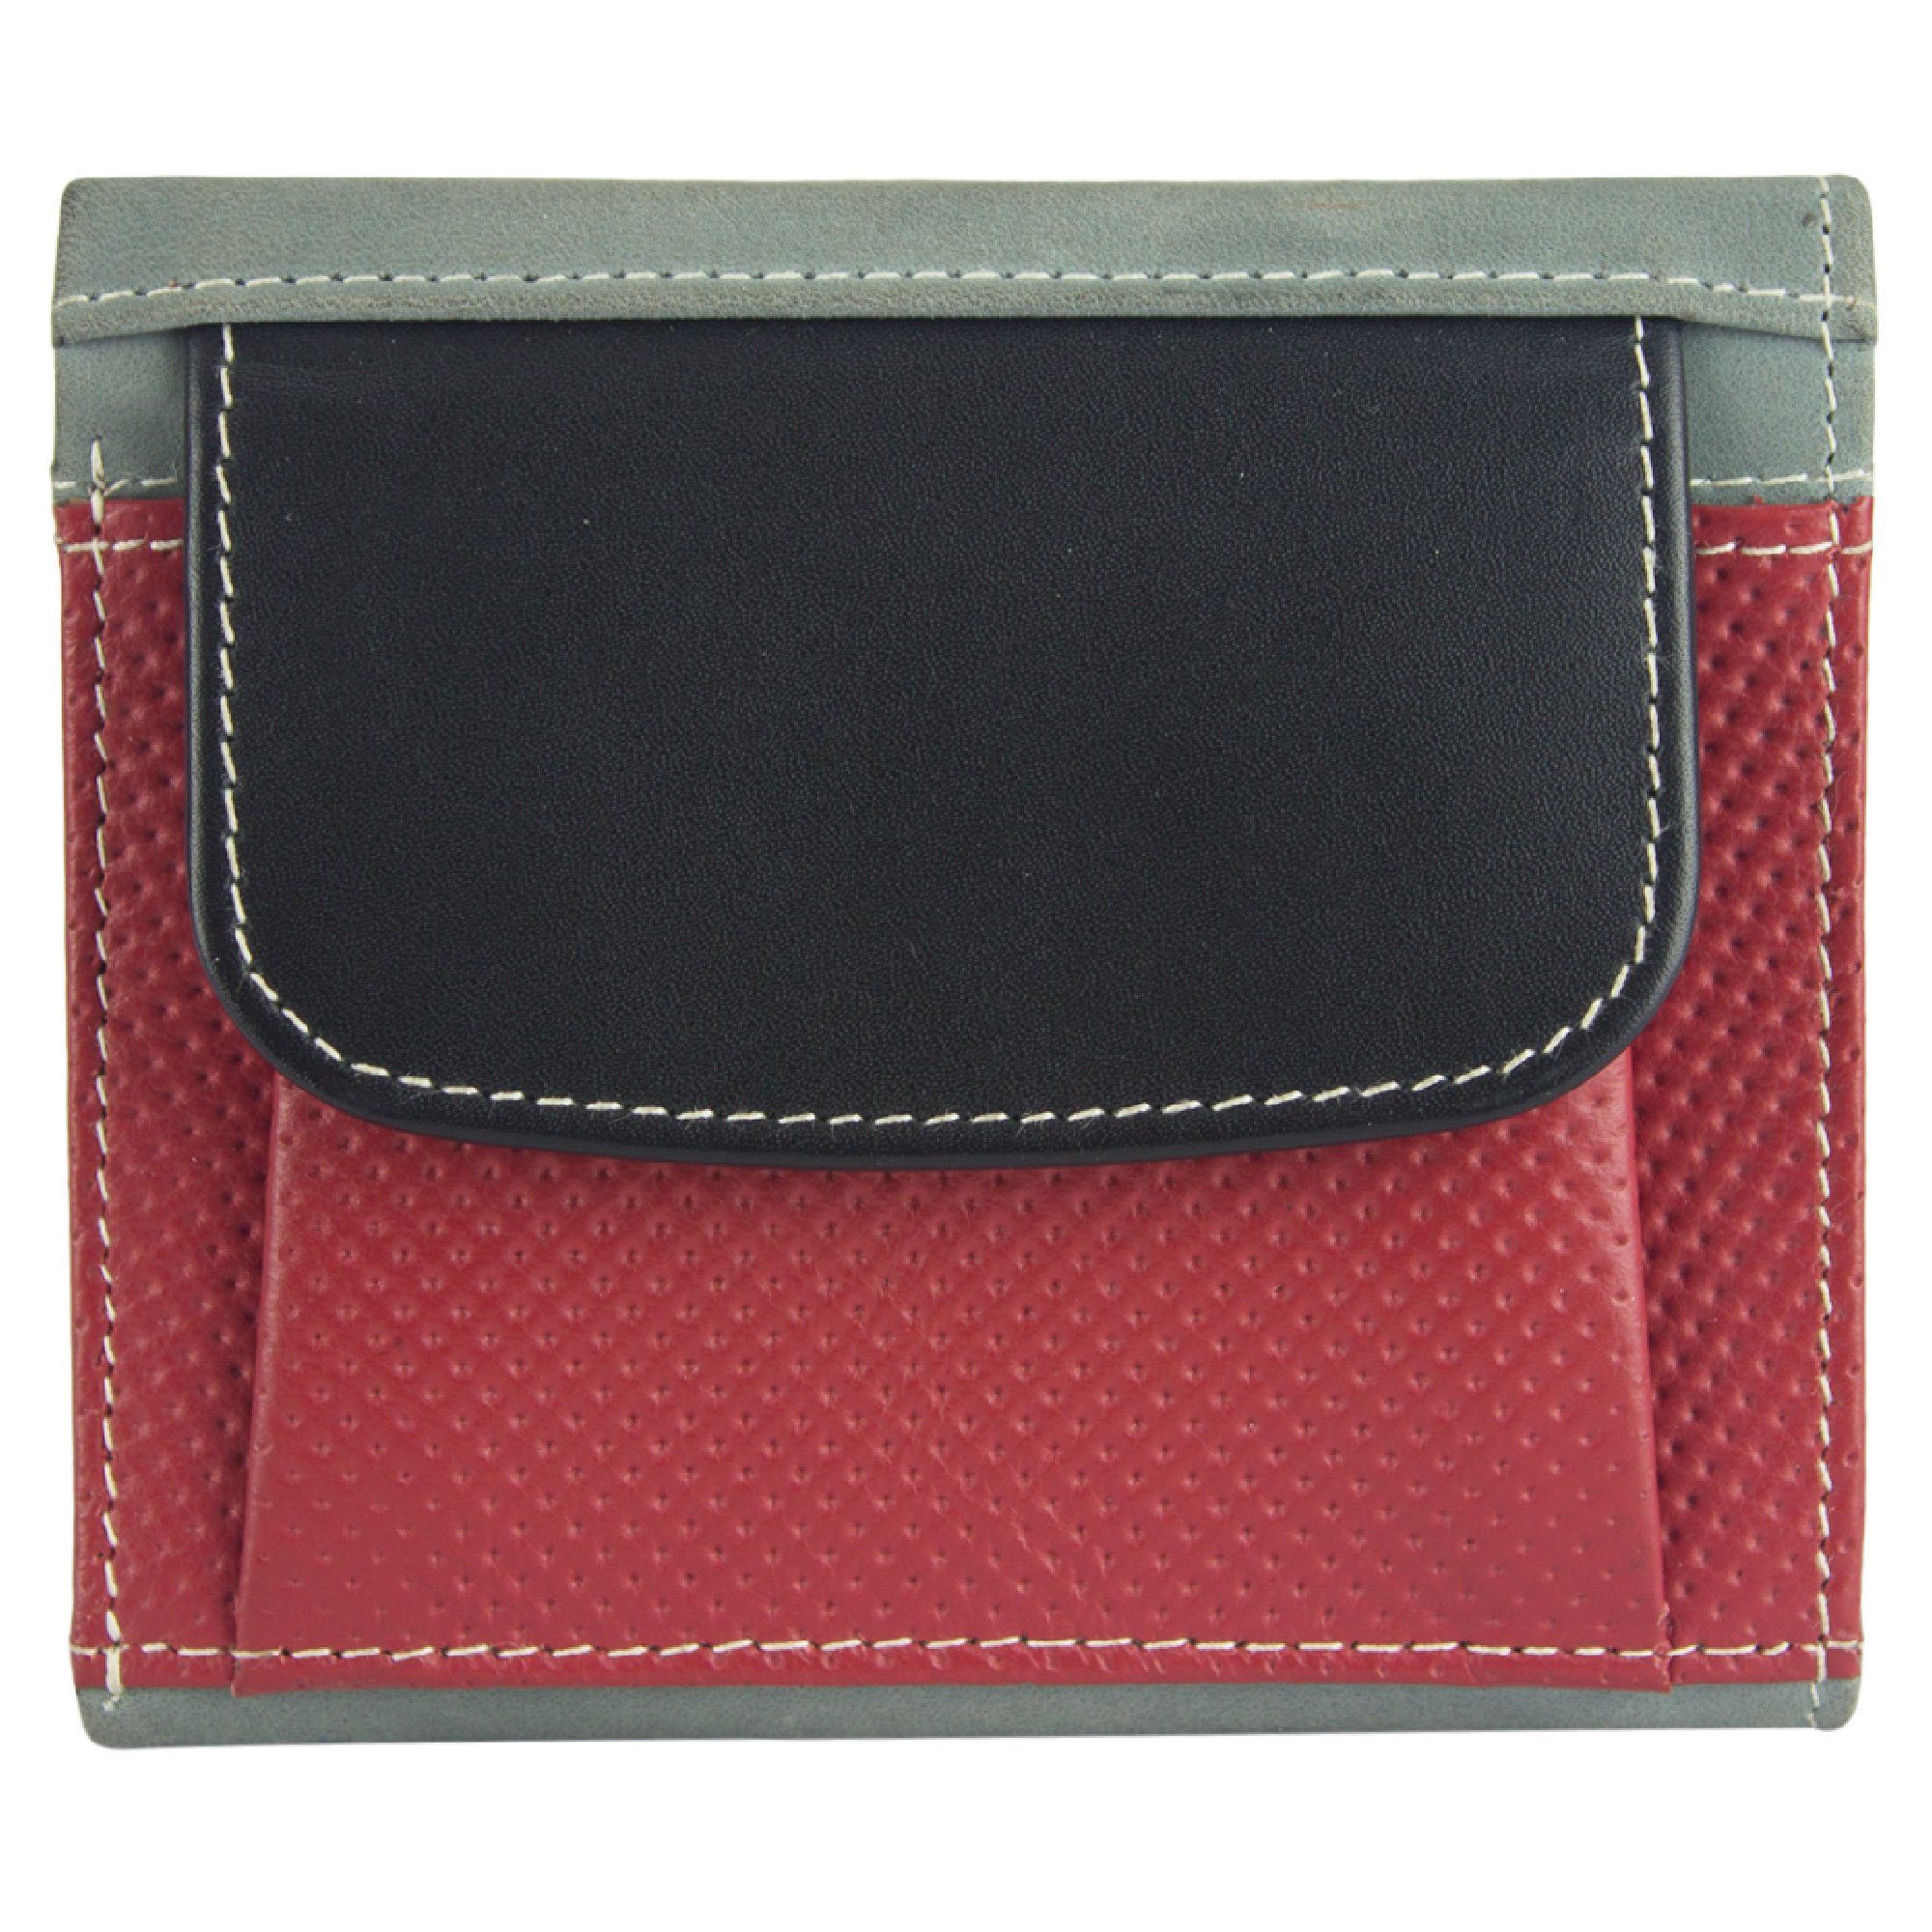 Sunsa Geldbörse echt Leder Geldbeutel Portemonnaie Brieftasche klein Damen, echt Leder, aus recycelten Lederresten, mit RFID-Schutz, Unisex grau/schwarz/rot